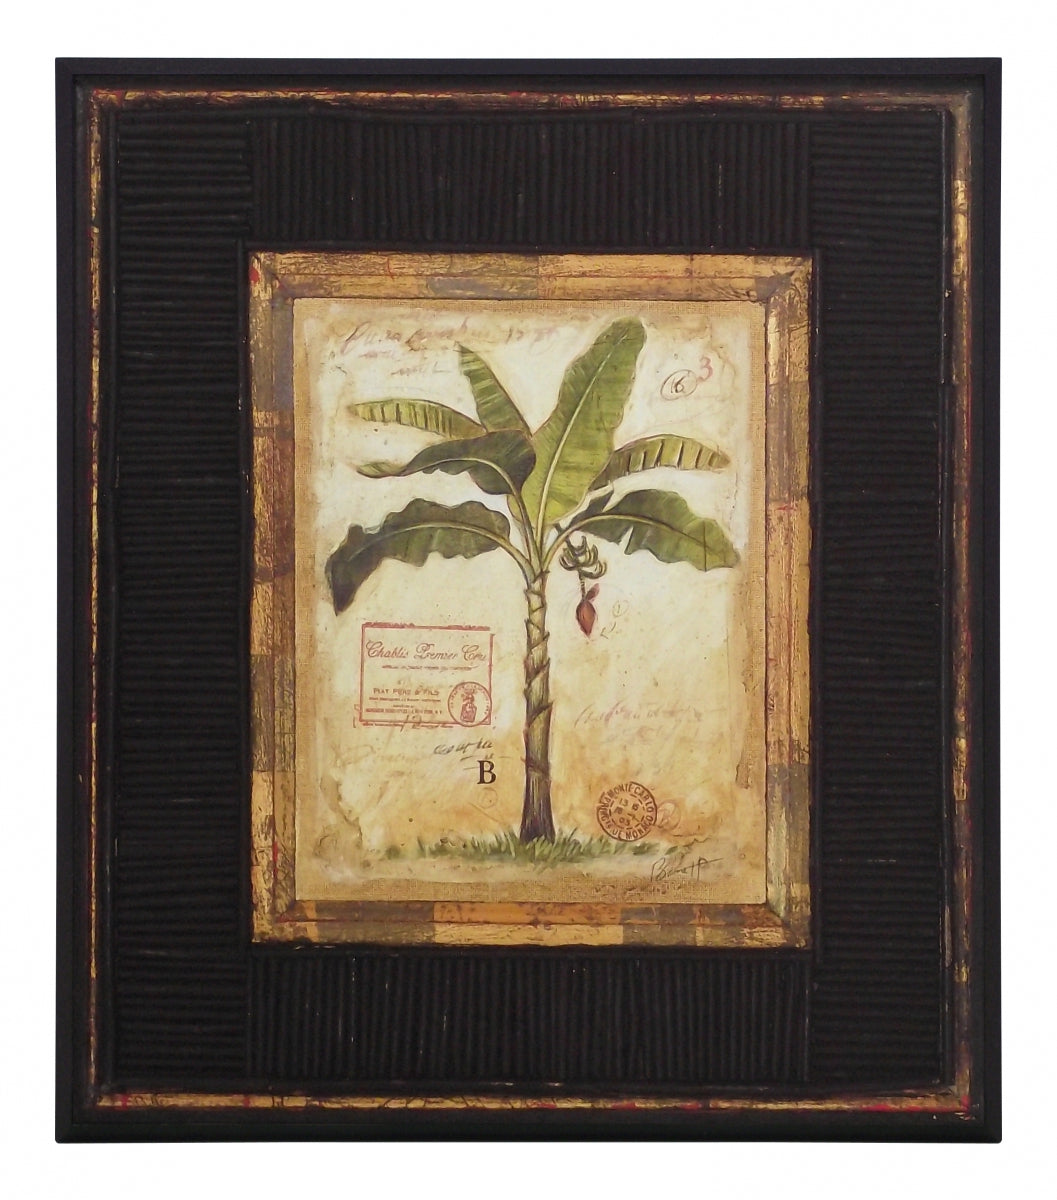 Obraz - Kolekcja 'Palmy', Banana Palm - reprodukcja A2463 na płycie z pogrubieniem 36x41 cm. - Obrazy Reprodukcje Ramy | ergopaul.pl